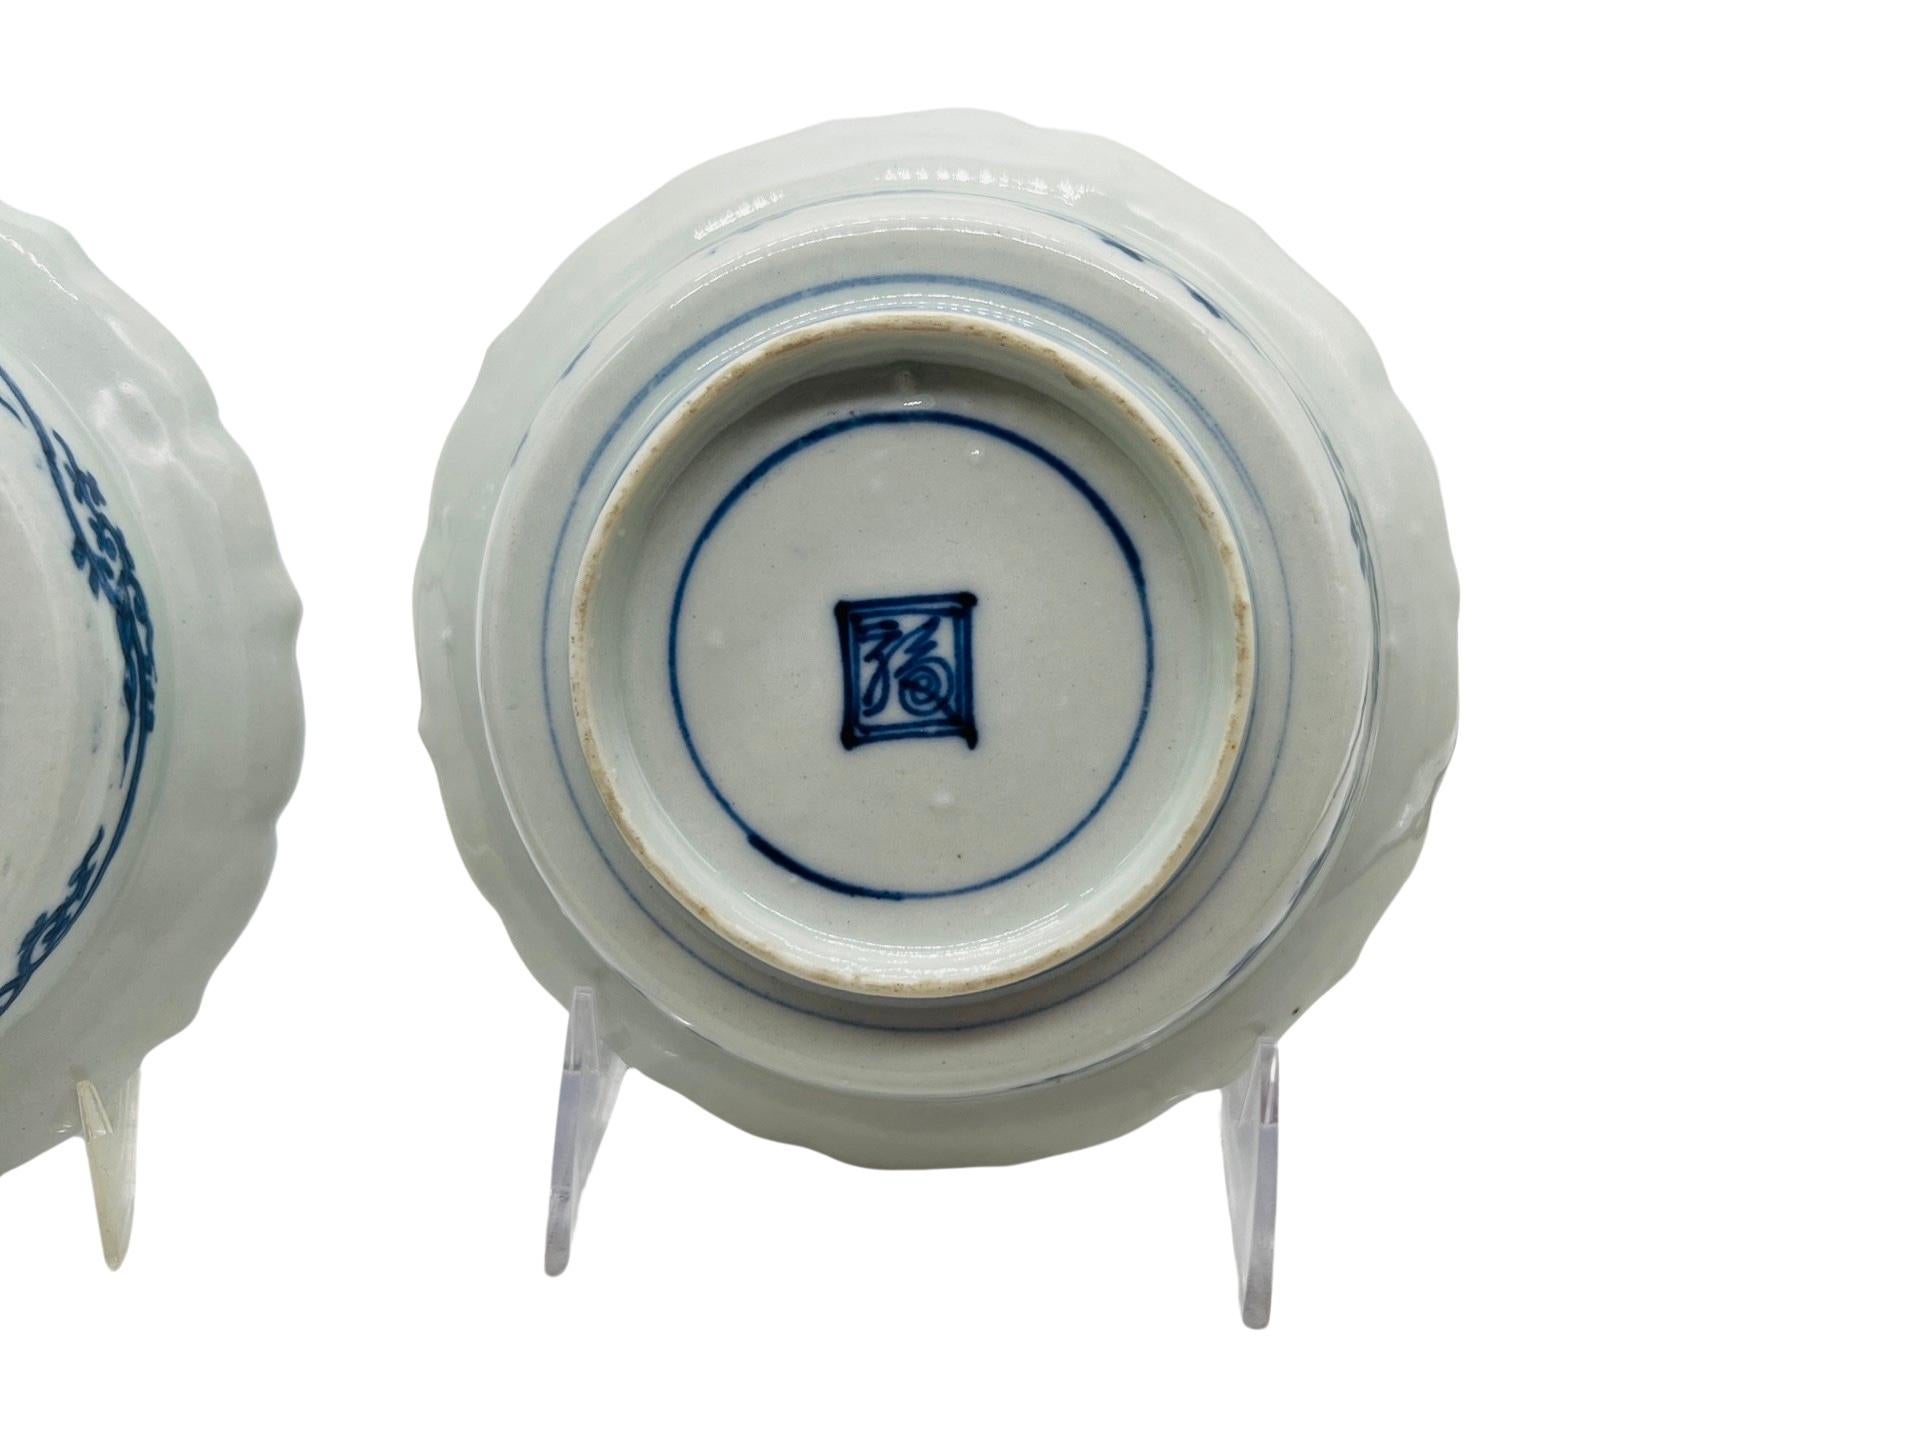 Chinois, 20e siècle. 
<br>Paire de bols festonnés bleus et blancs avec des scènes figuratives à l'intérieur et entourés de motifs feuillus. 
<br>Marqué sur la face inférieure. 
<br>Approx : 5.875